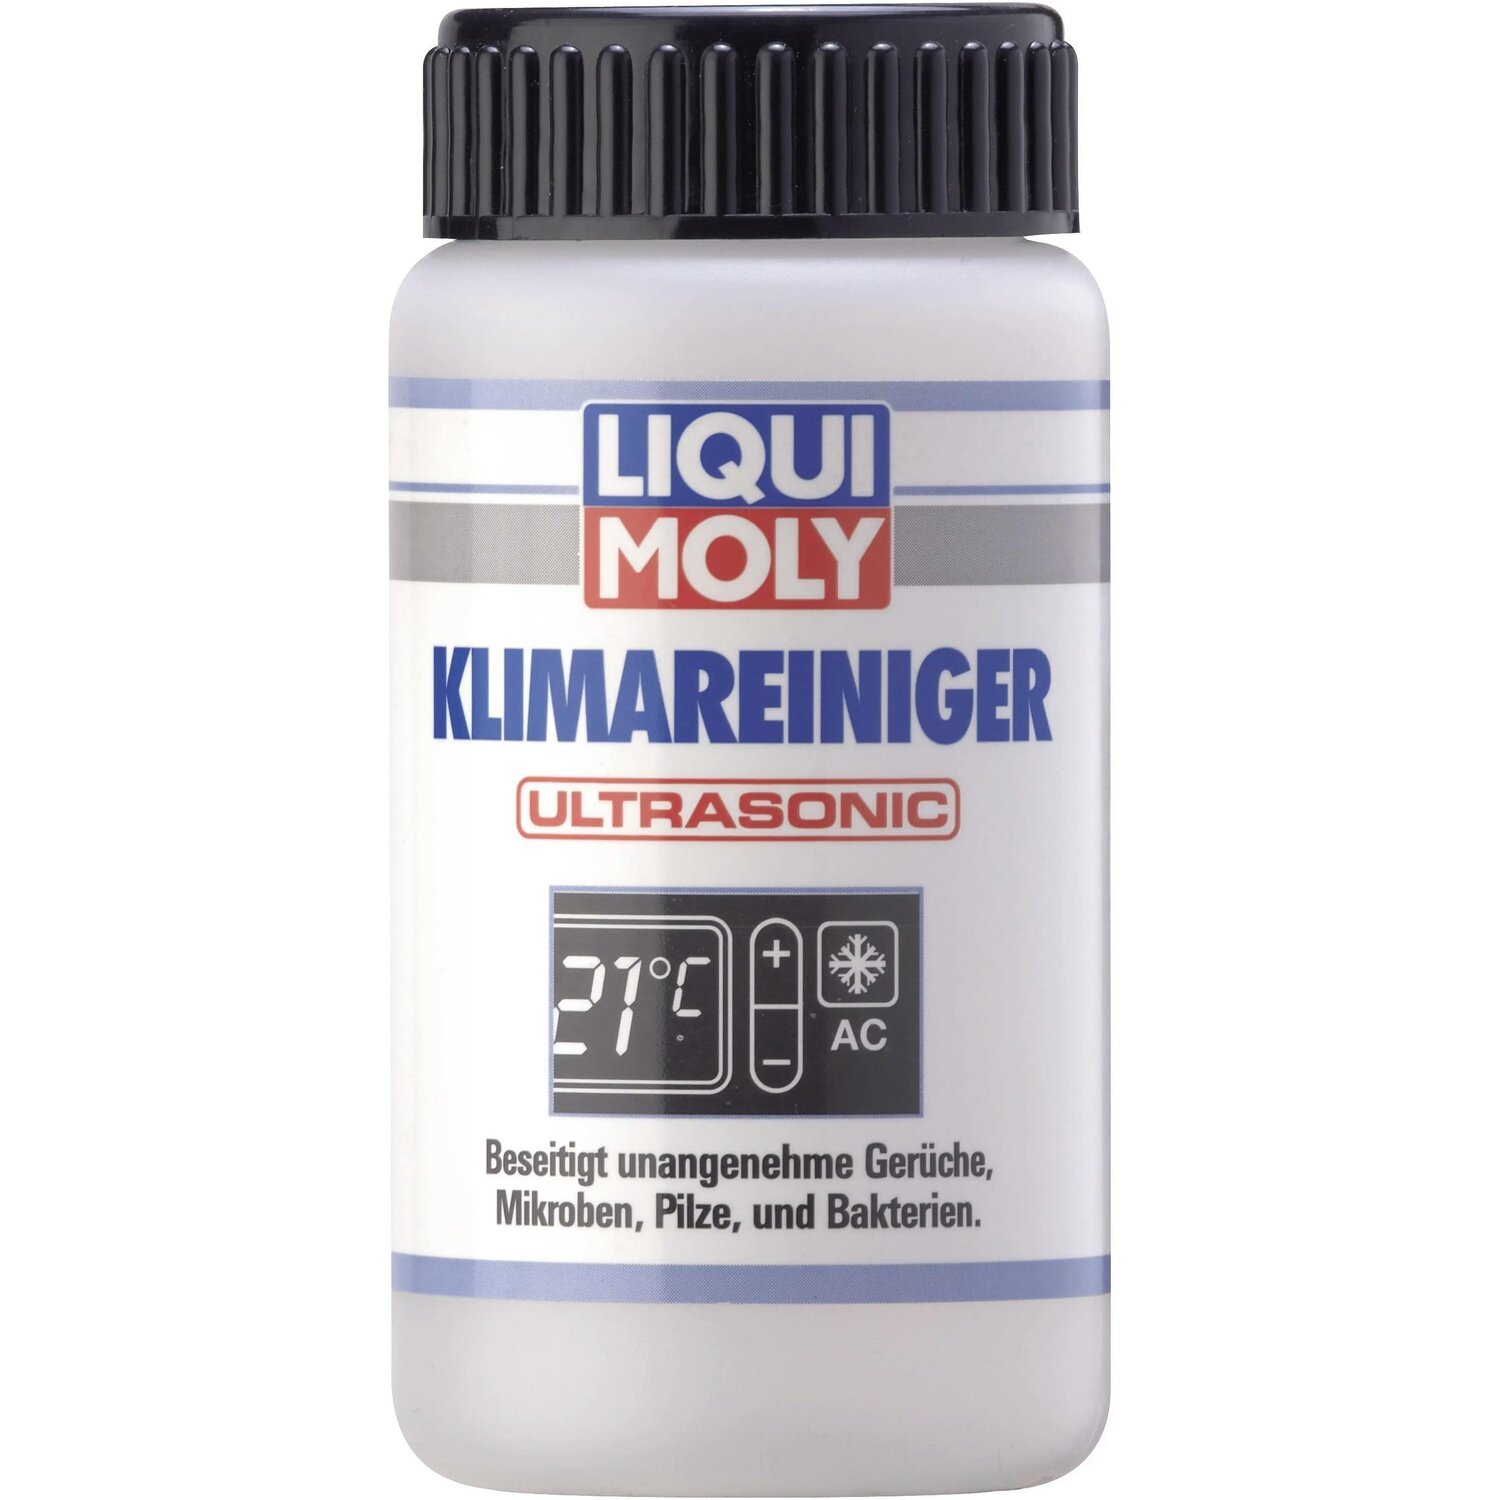 Очиститель Liqui Moly для кондиционера (для ультразвуковых установок) Klimareiniger Ultrasonic 0,1л (4100420040795) фото 